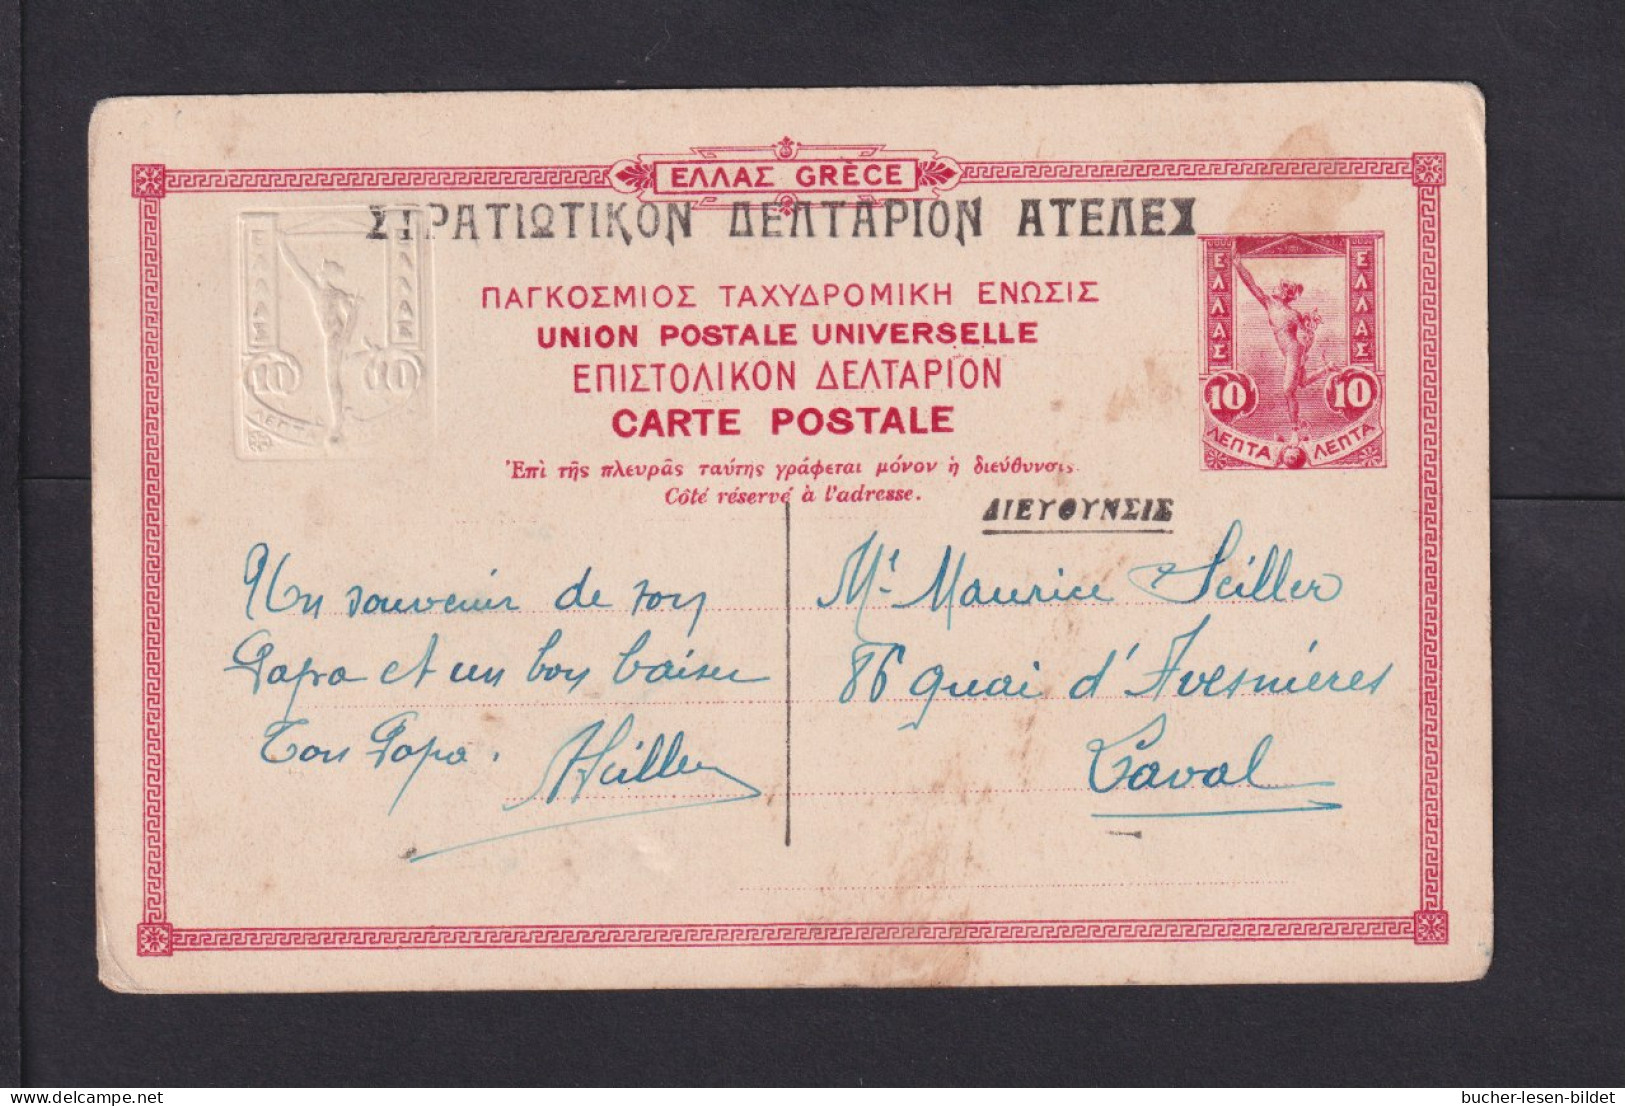 10 L. Bild-Ganzsache "282 - Athenes - Le Banque Nationale"  - Entiers Postaux